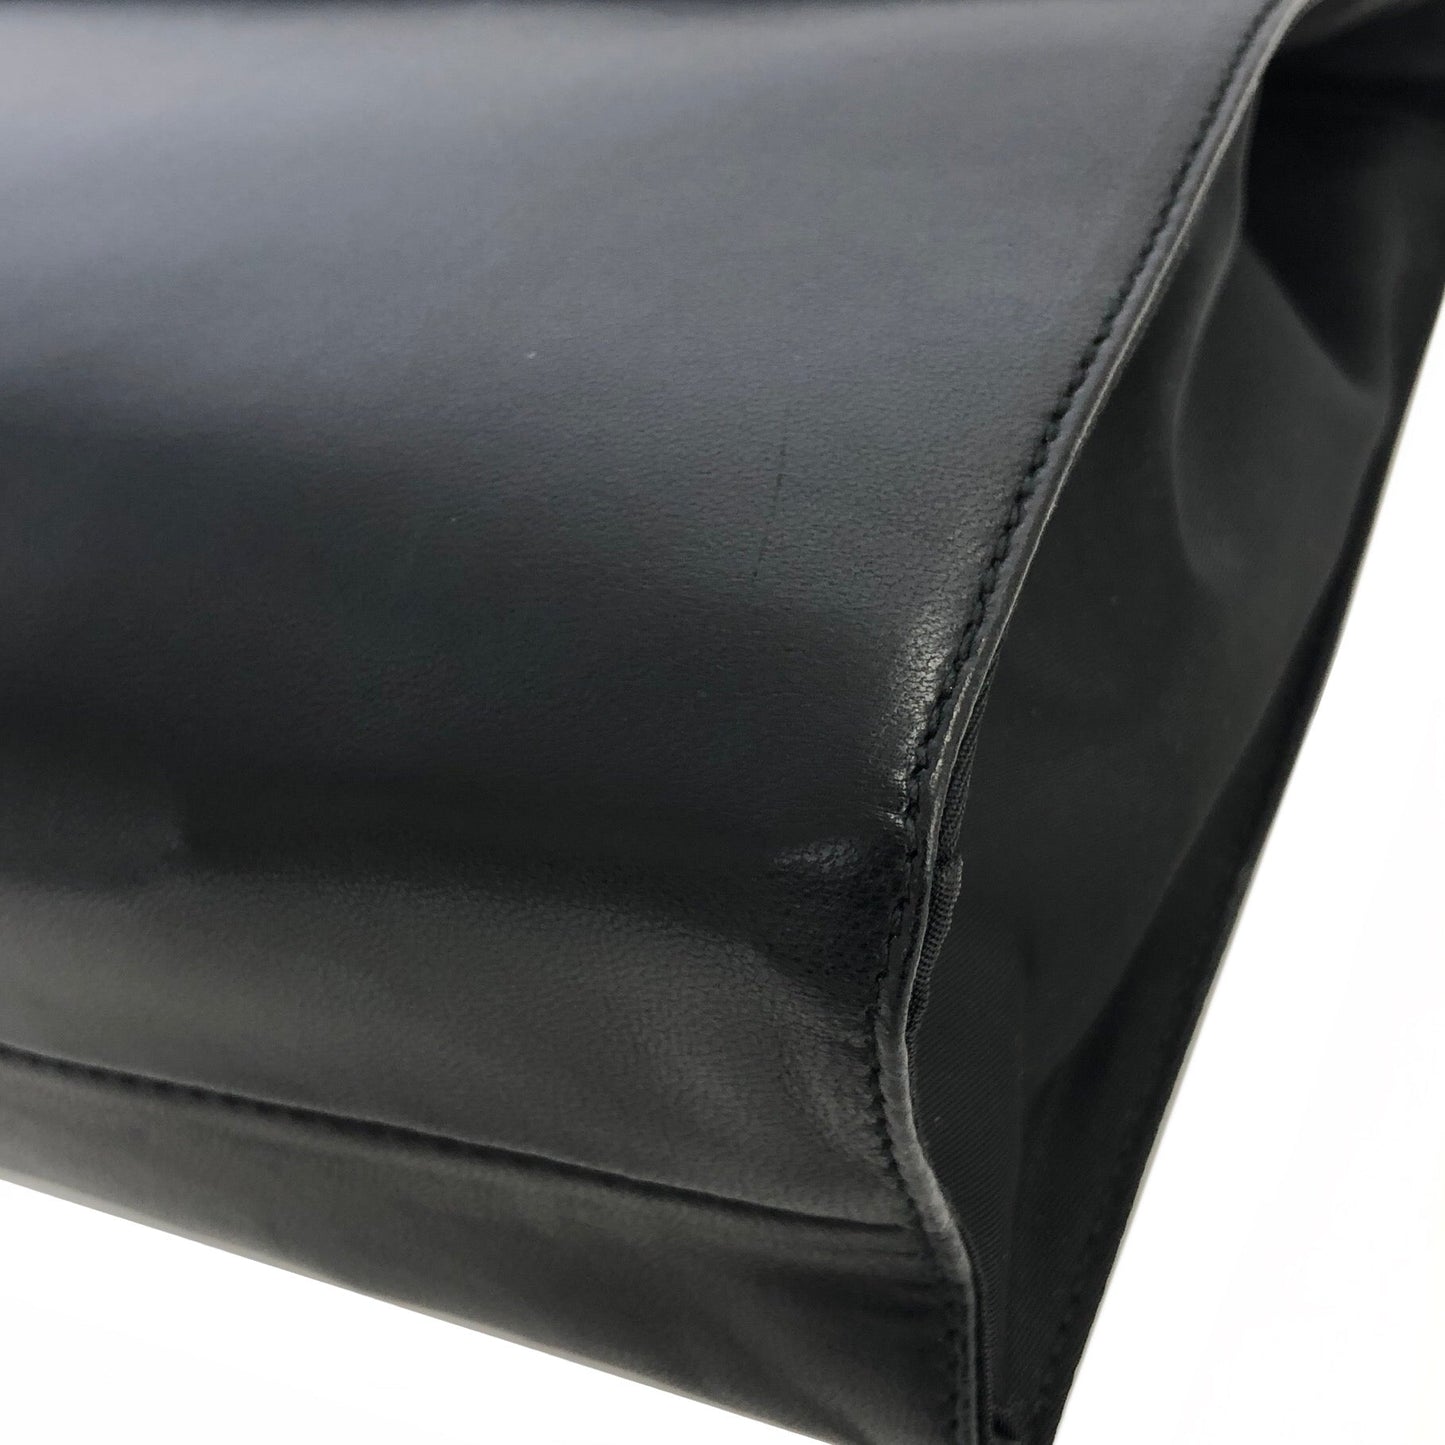 PRADA Nappa Leather Handbag Black wb5dh7